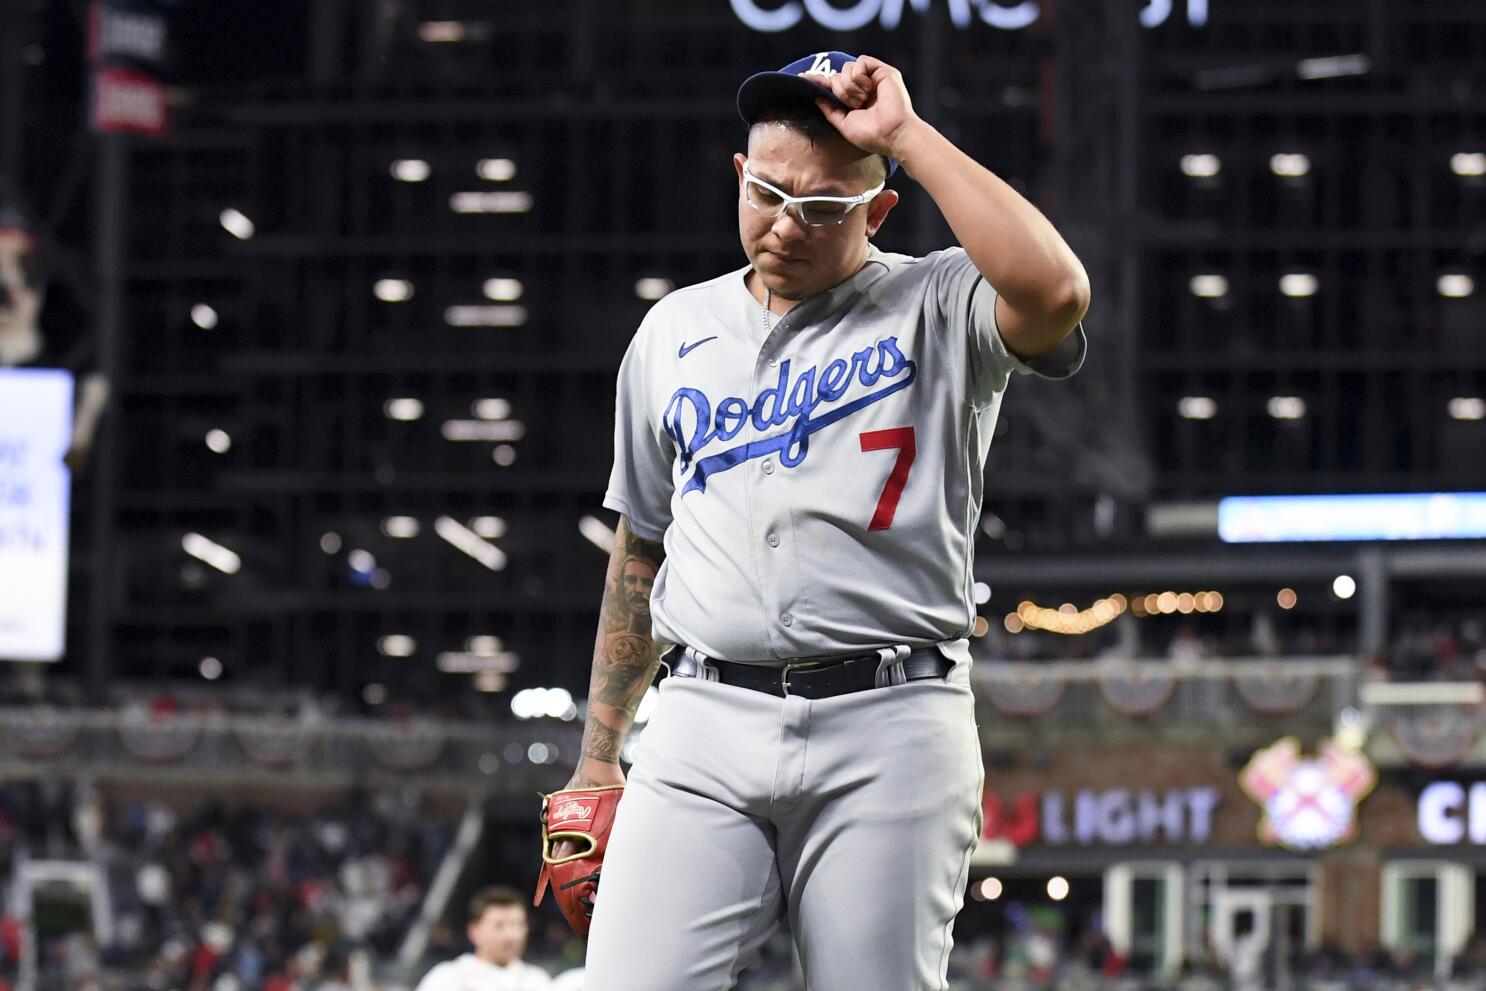 Martínez pega jonrón y Dodgers vencen a Nacionales - Los Angeles Times